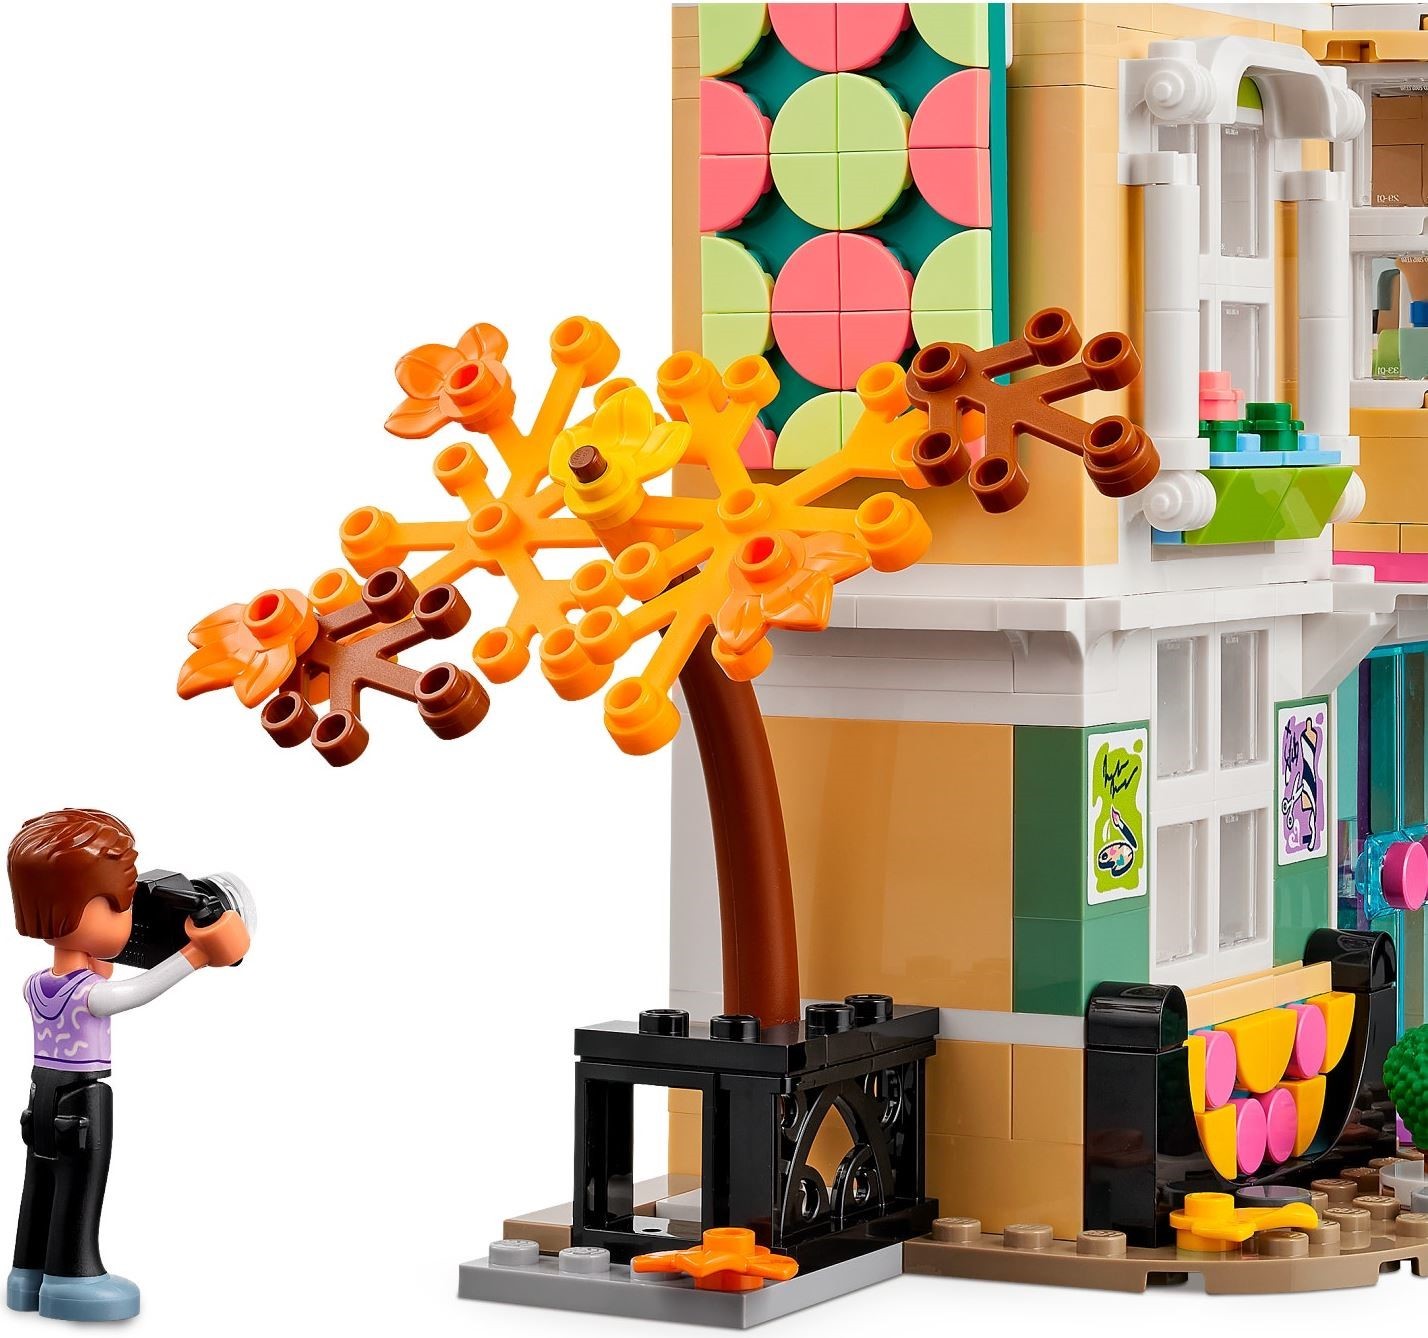 LEGO Friends - Scoala de arte a Emmei 41711, 844 piese